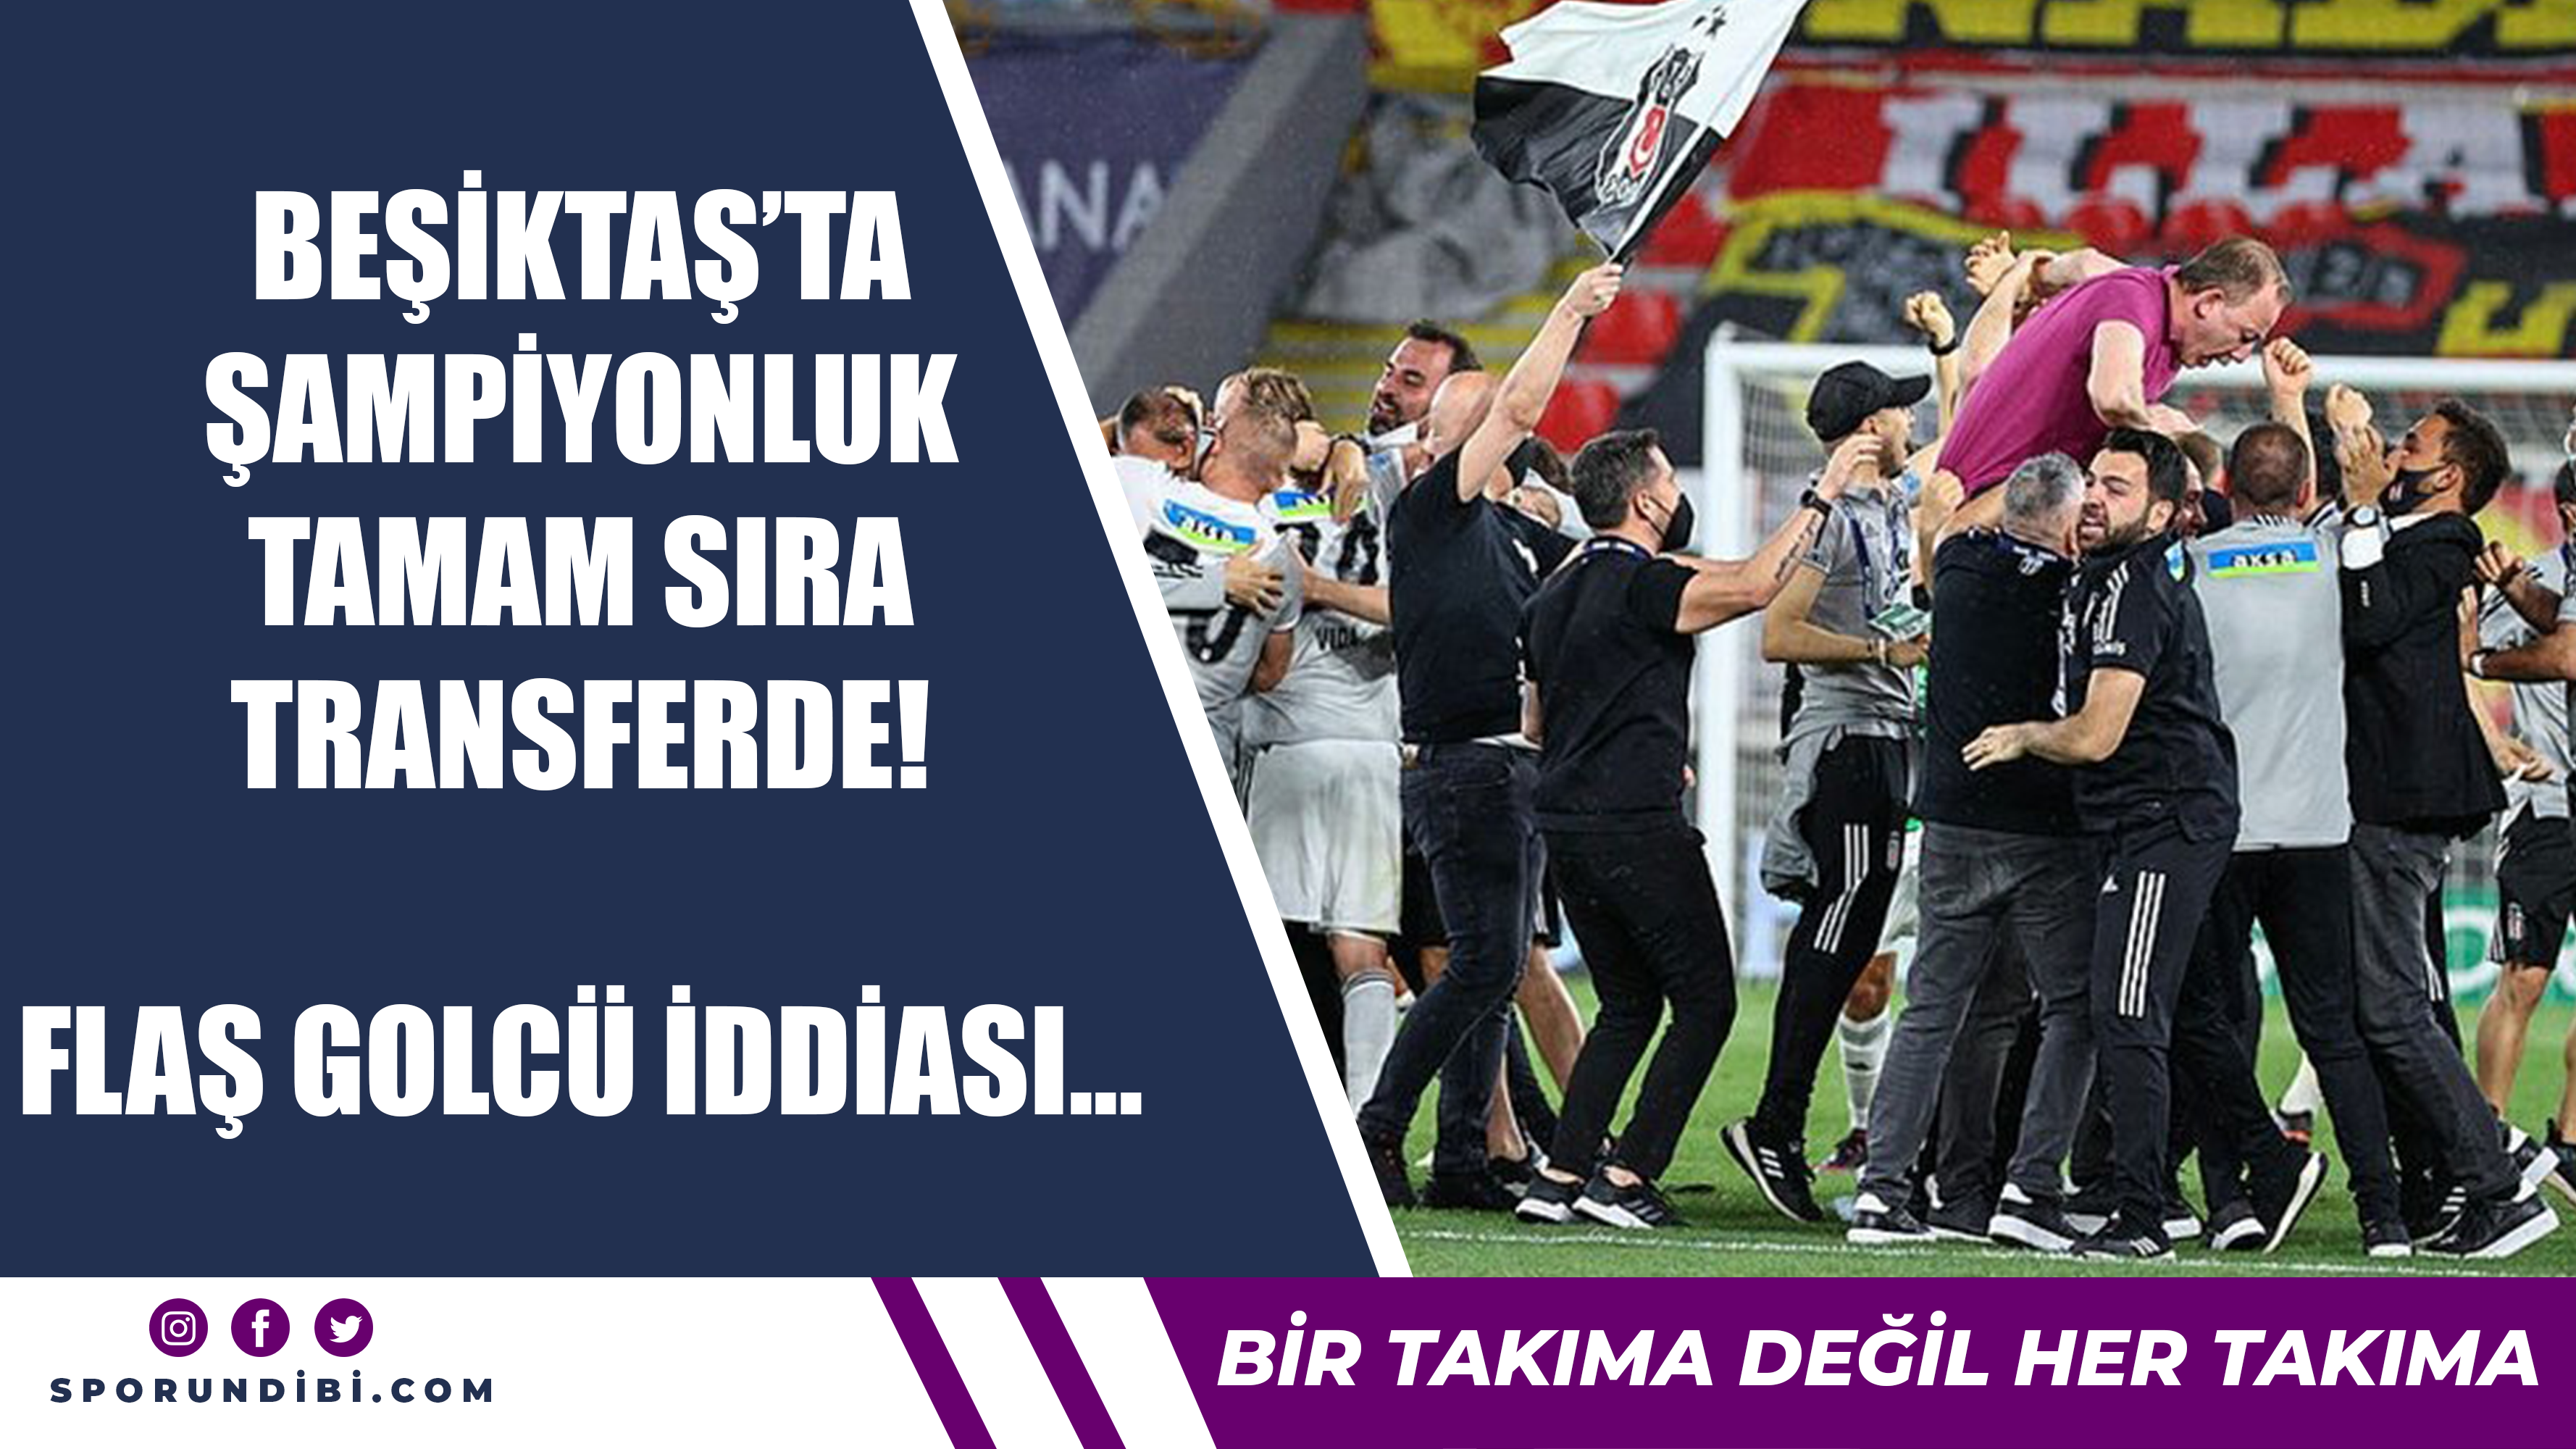 Beşiktaş'ta şampiyonluk tamam sıra transferde! Flaş golcü iddiası...